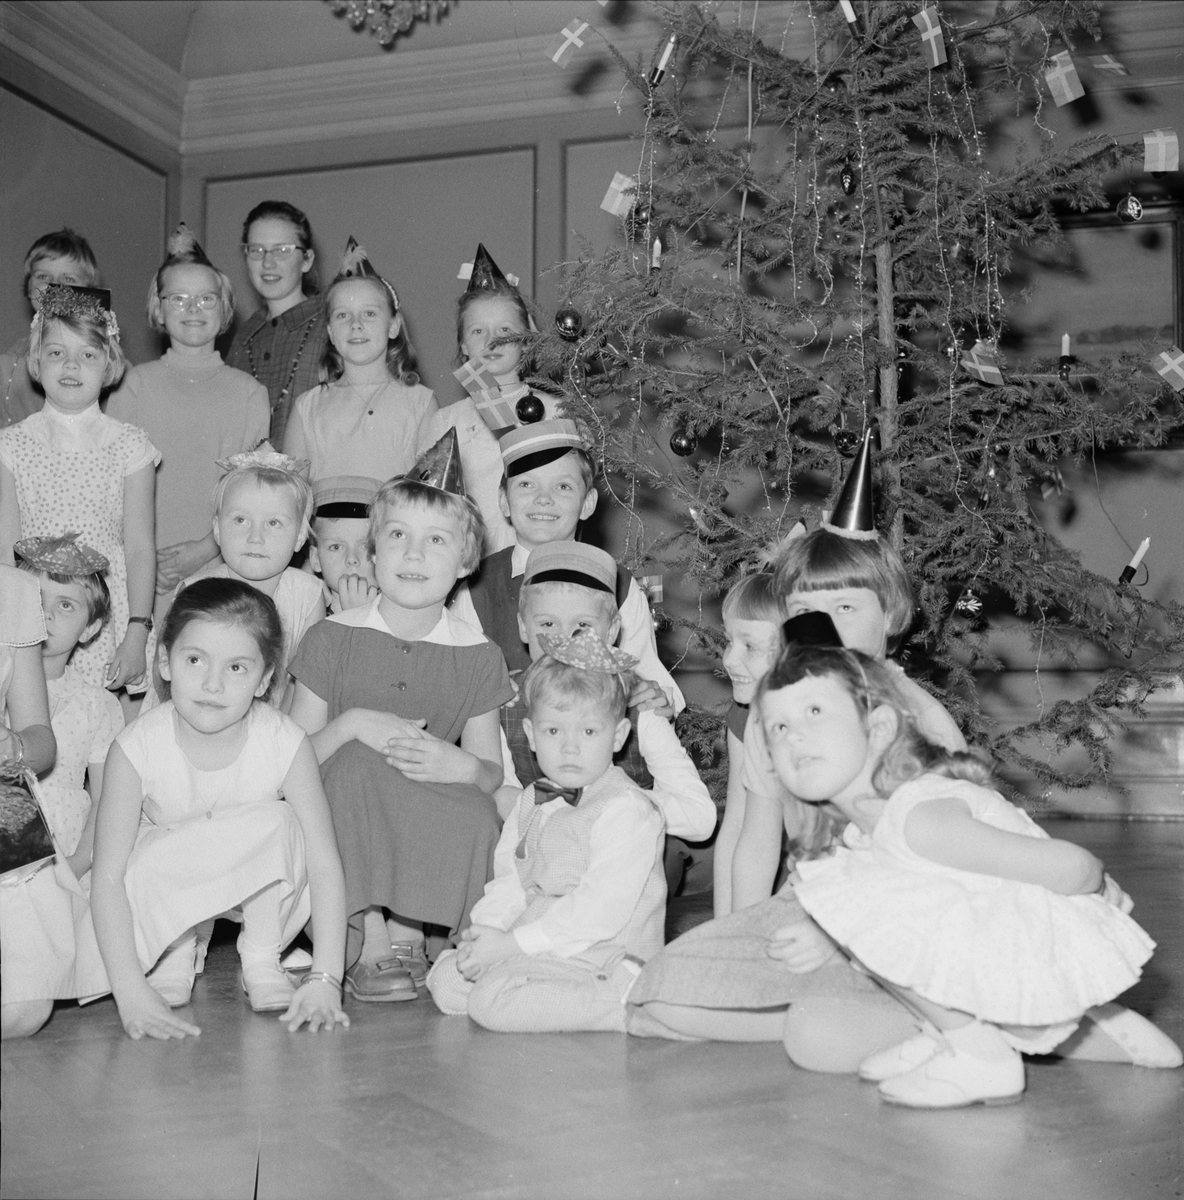 "Sällskapet Hjälpsamhetens julfest för barn", Gillet, Uppsala 1958